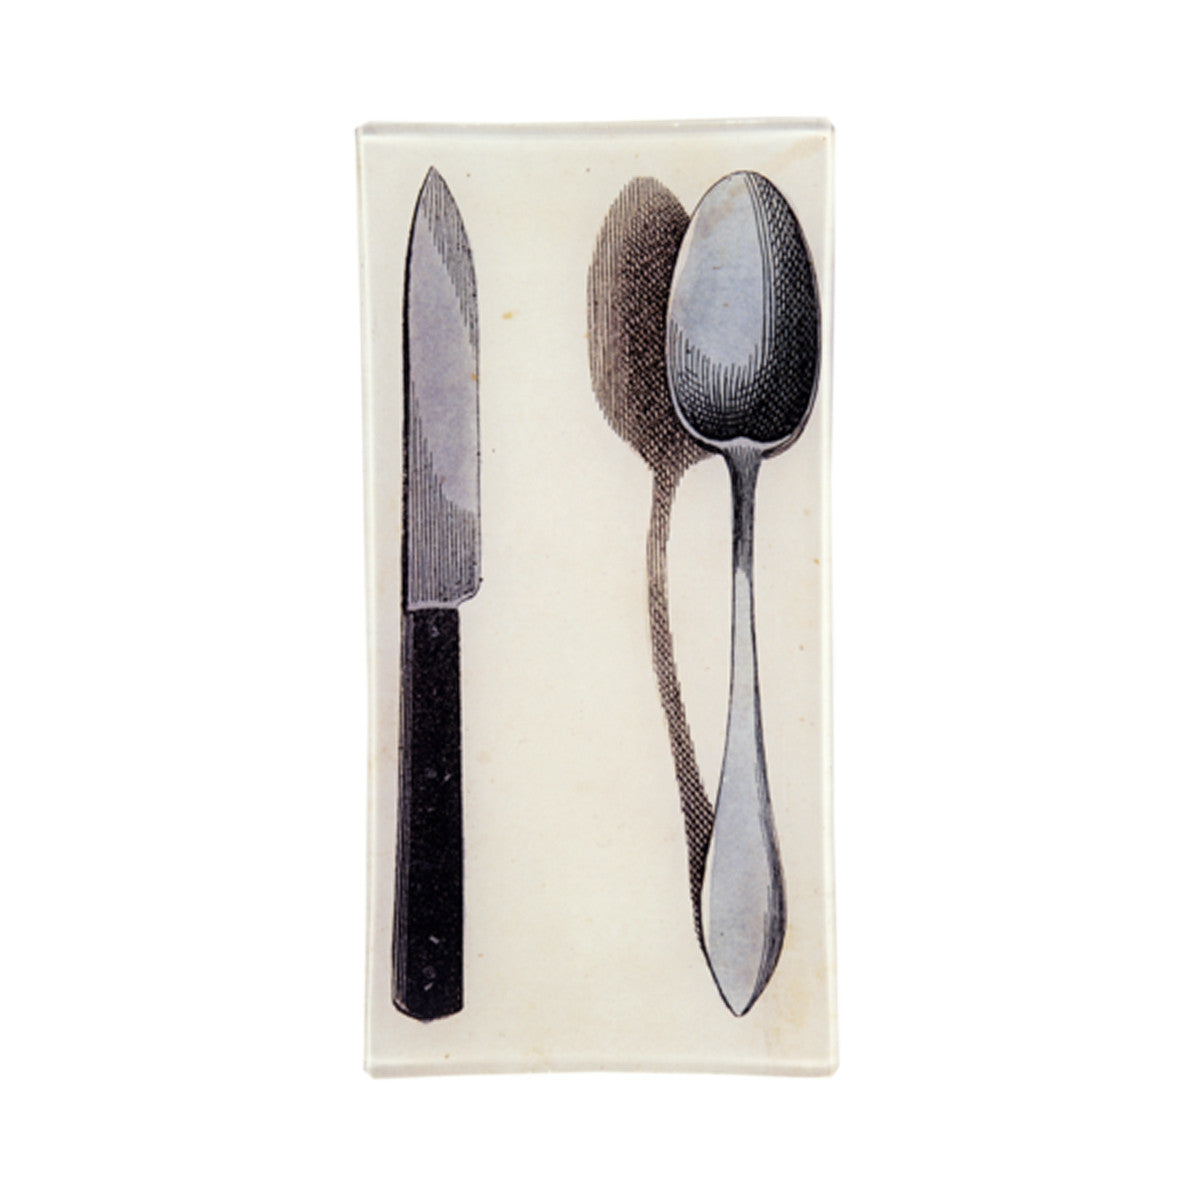 John Derian Spoon and Knife Tray